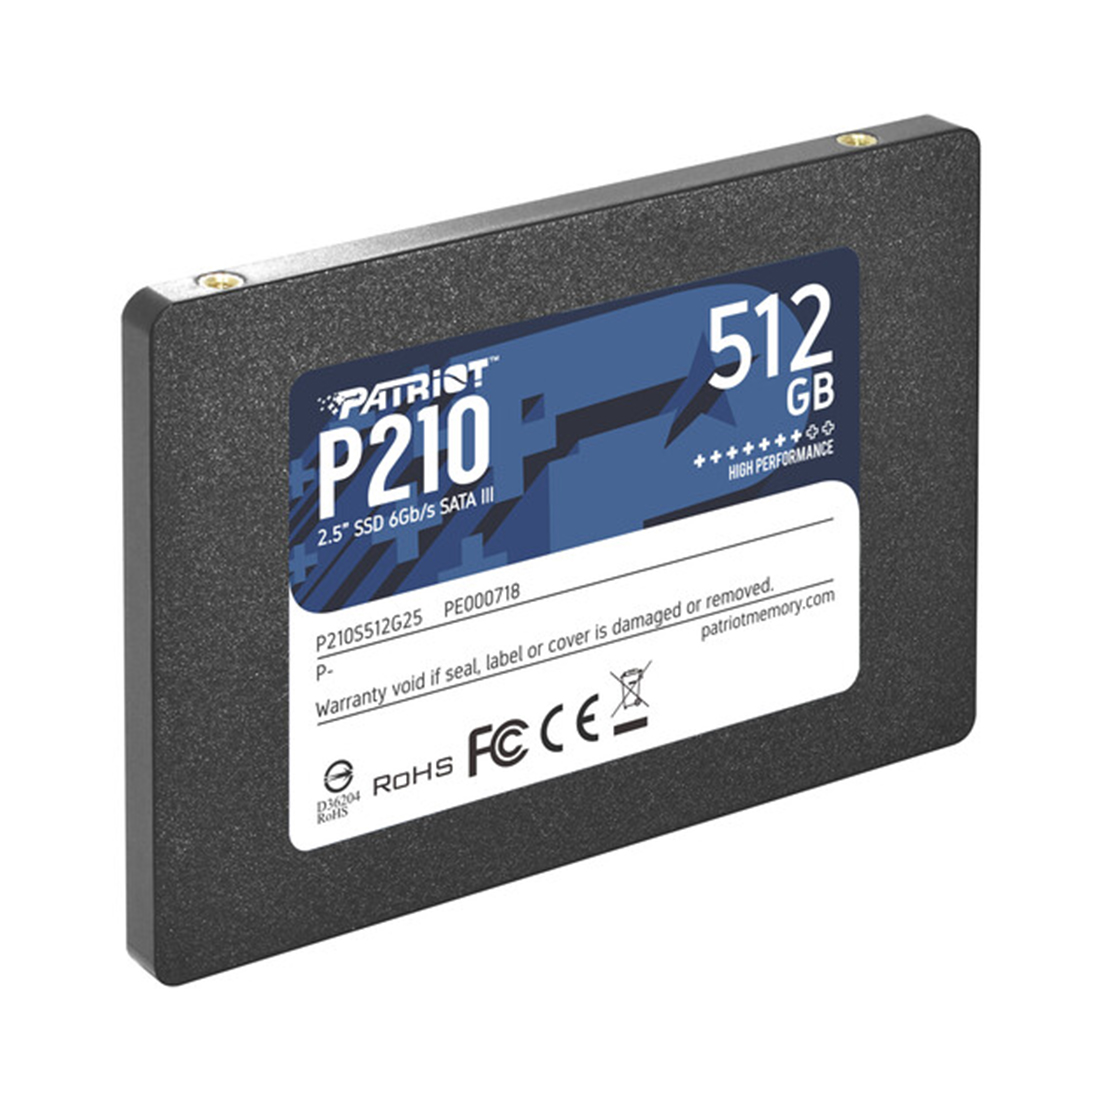 Твердотельный накопитель SSD Patriot P210 512GB SATA